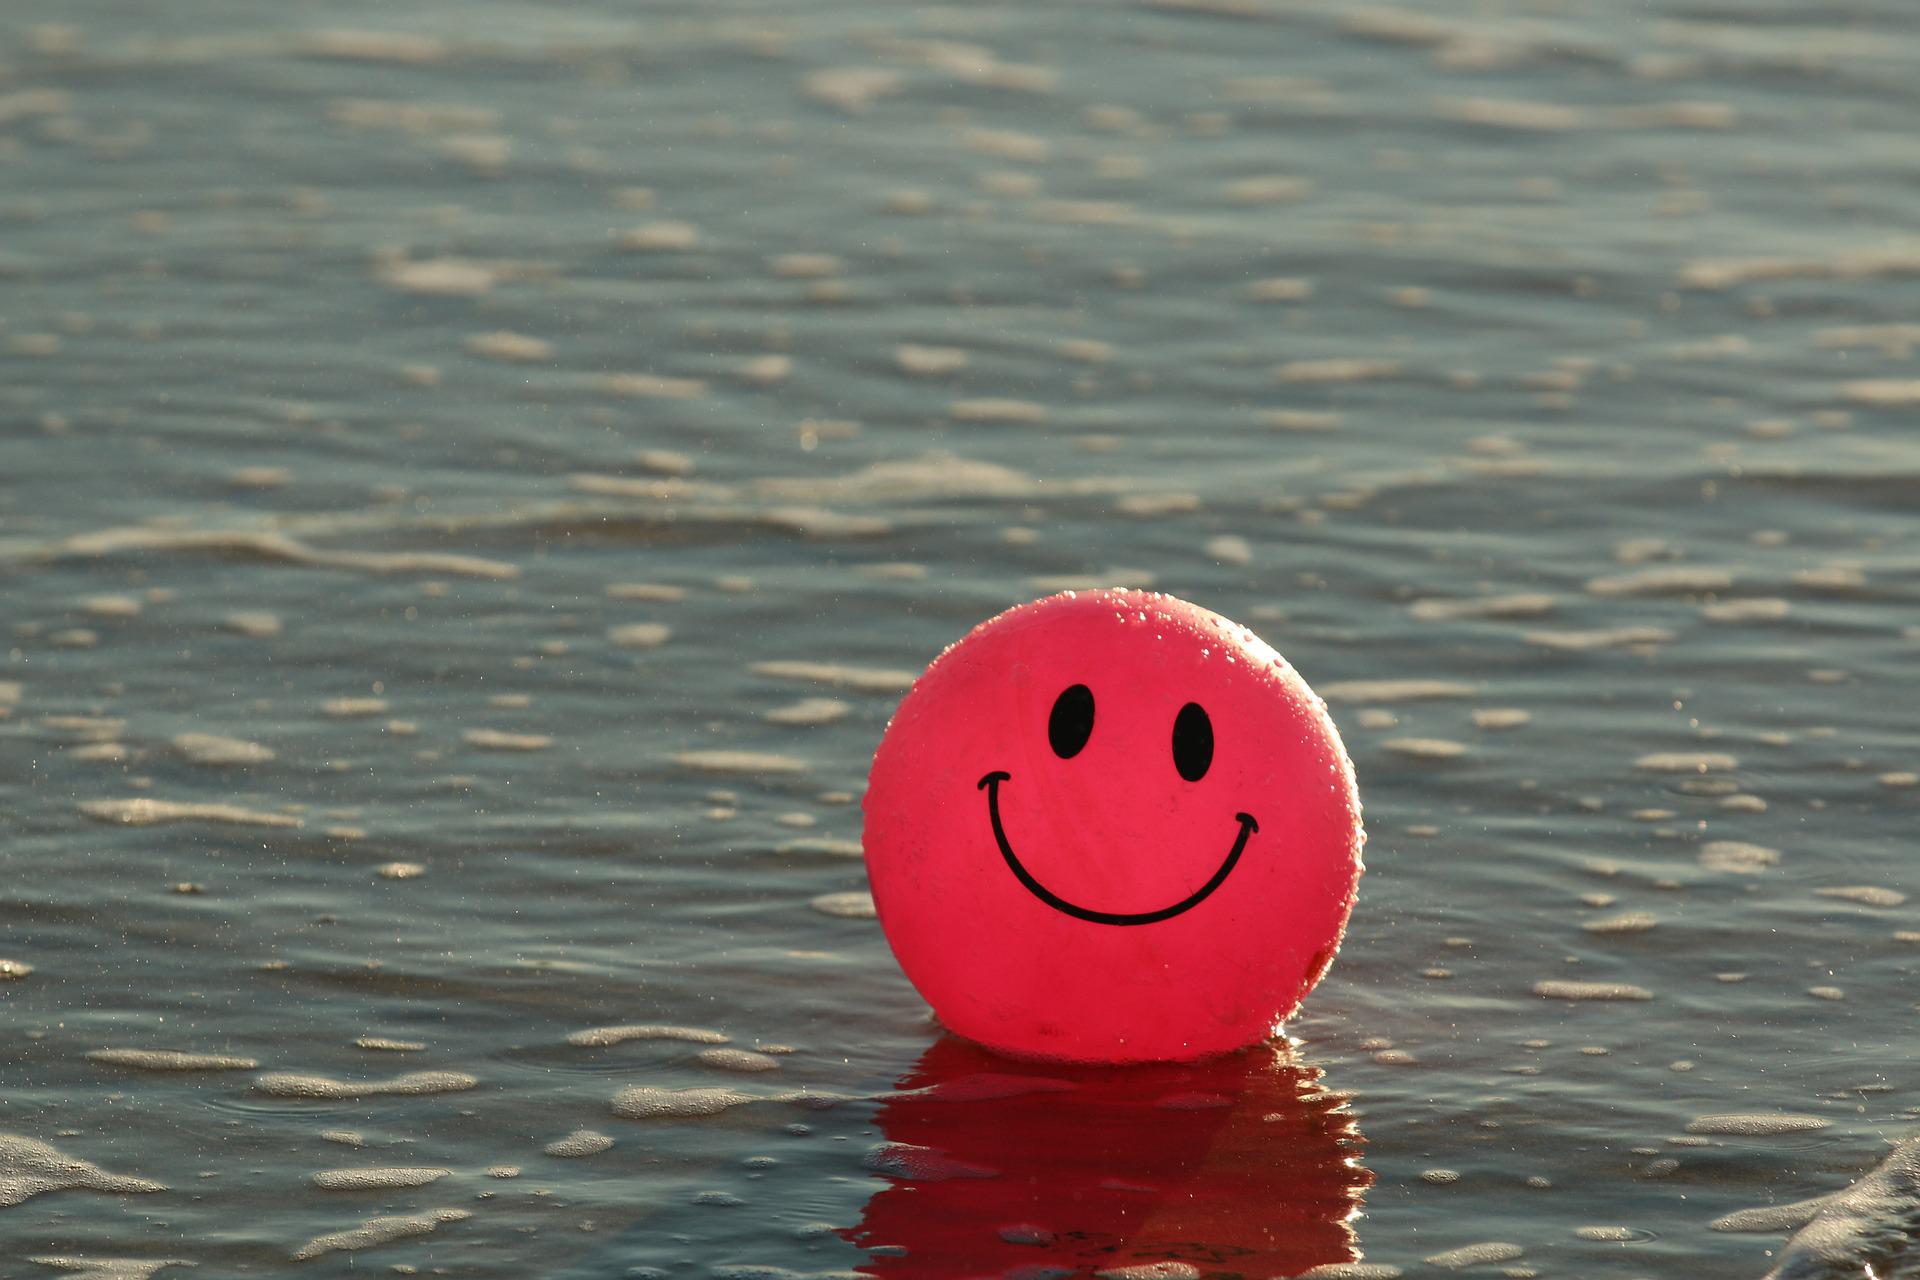 Punainen ilmapallo, jossa on hymynaama, kelluu veden pinnalla